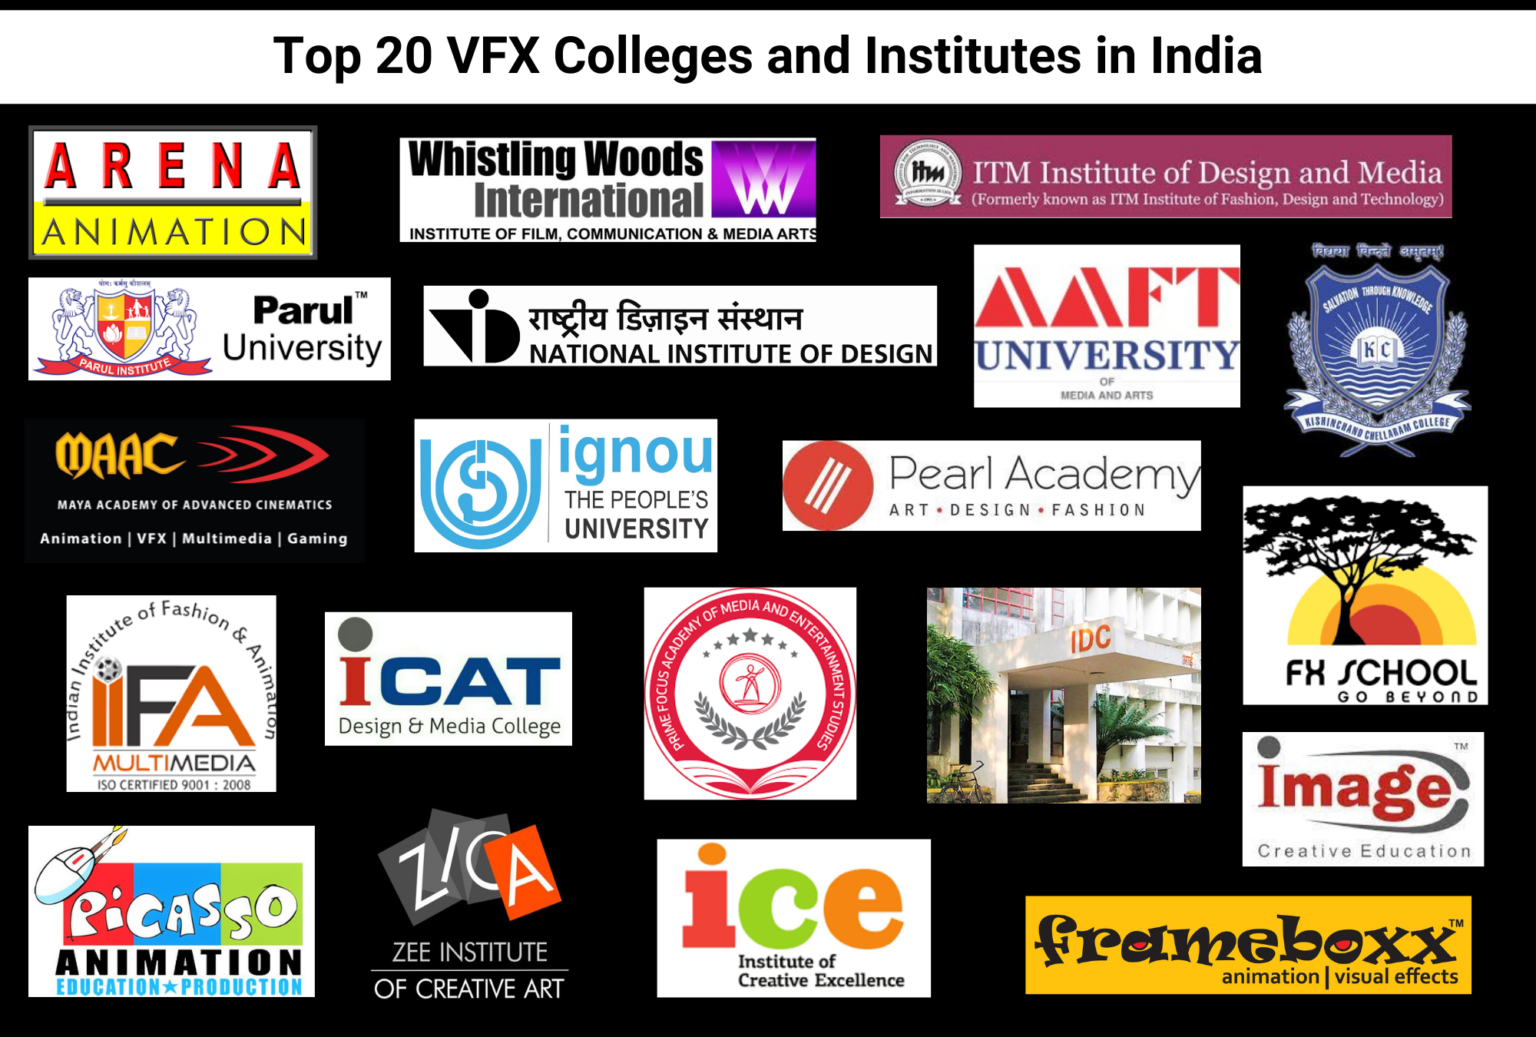 Top VFX Colleges and Institutes in India